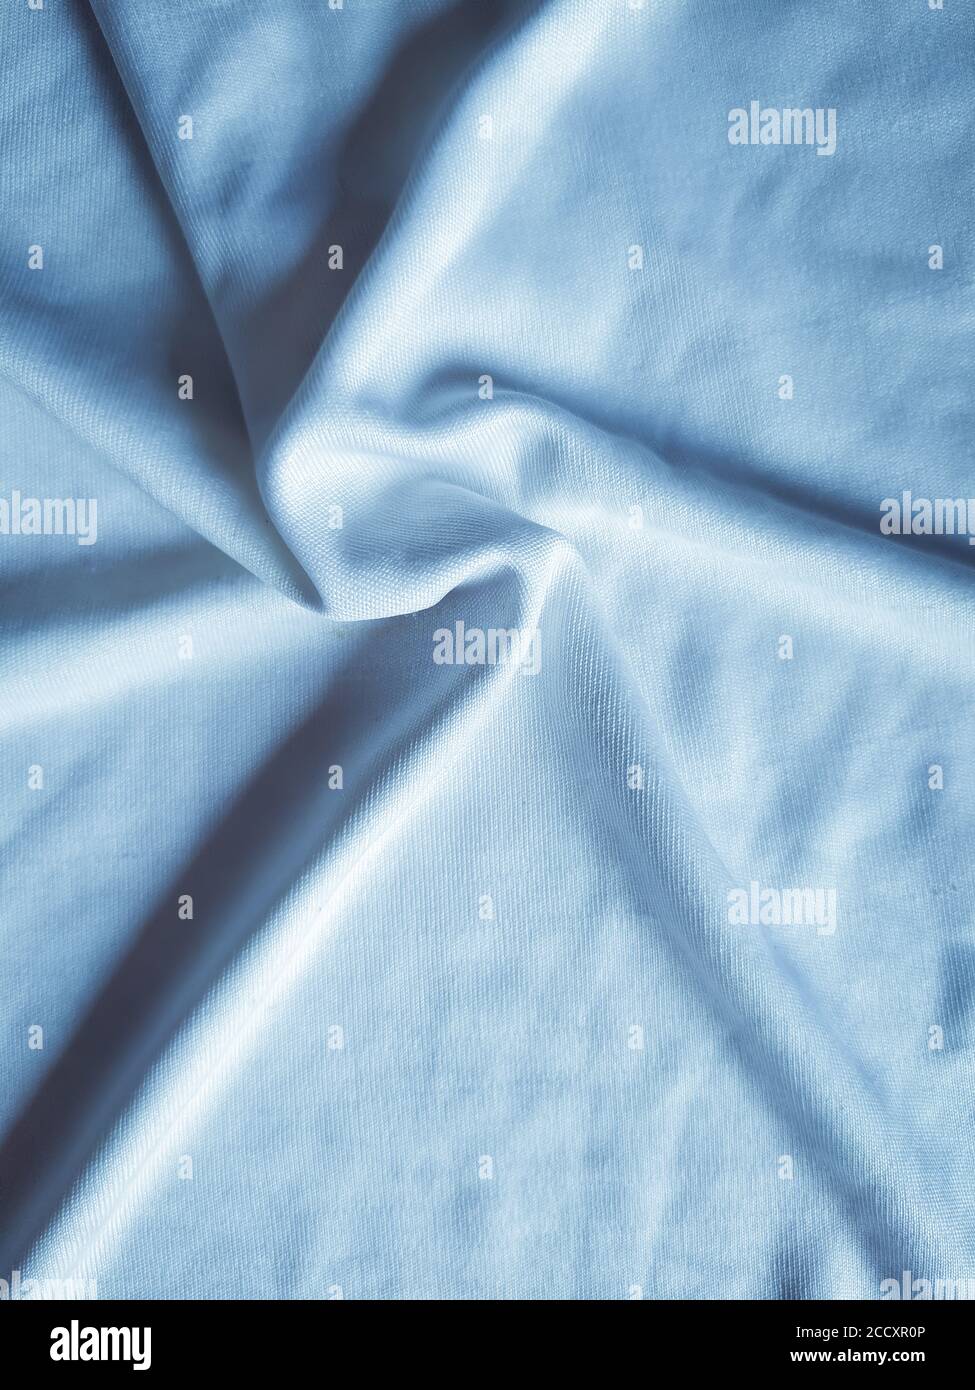 Sternförmige kreisförmige Muster auf Seidenstoff, handgefertigte Faltungen auf Tüchern, elegant blau getönt. Nützlich für Hintergrundbilder. Stockfoto